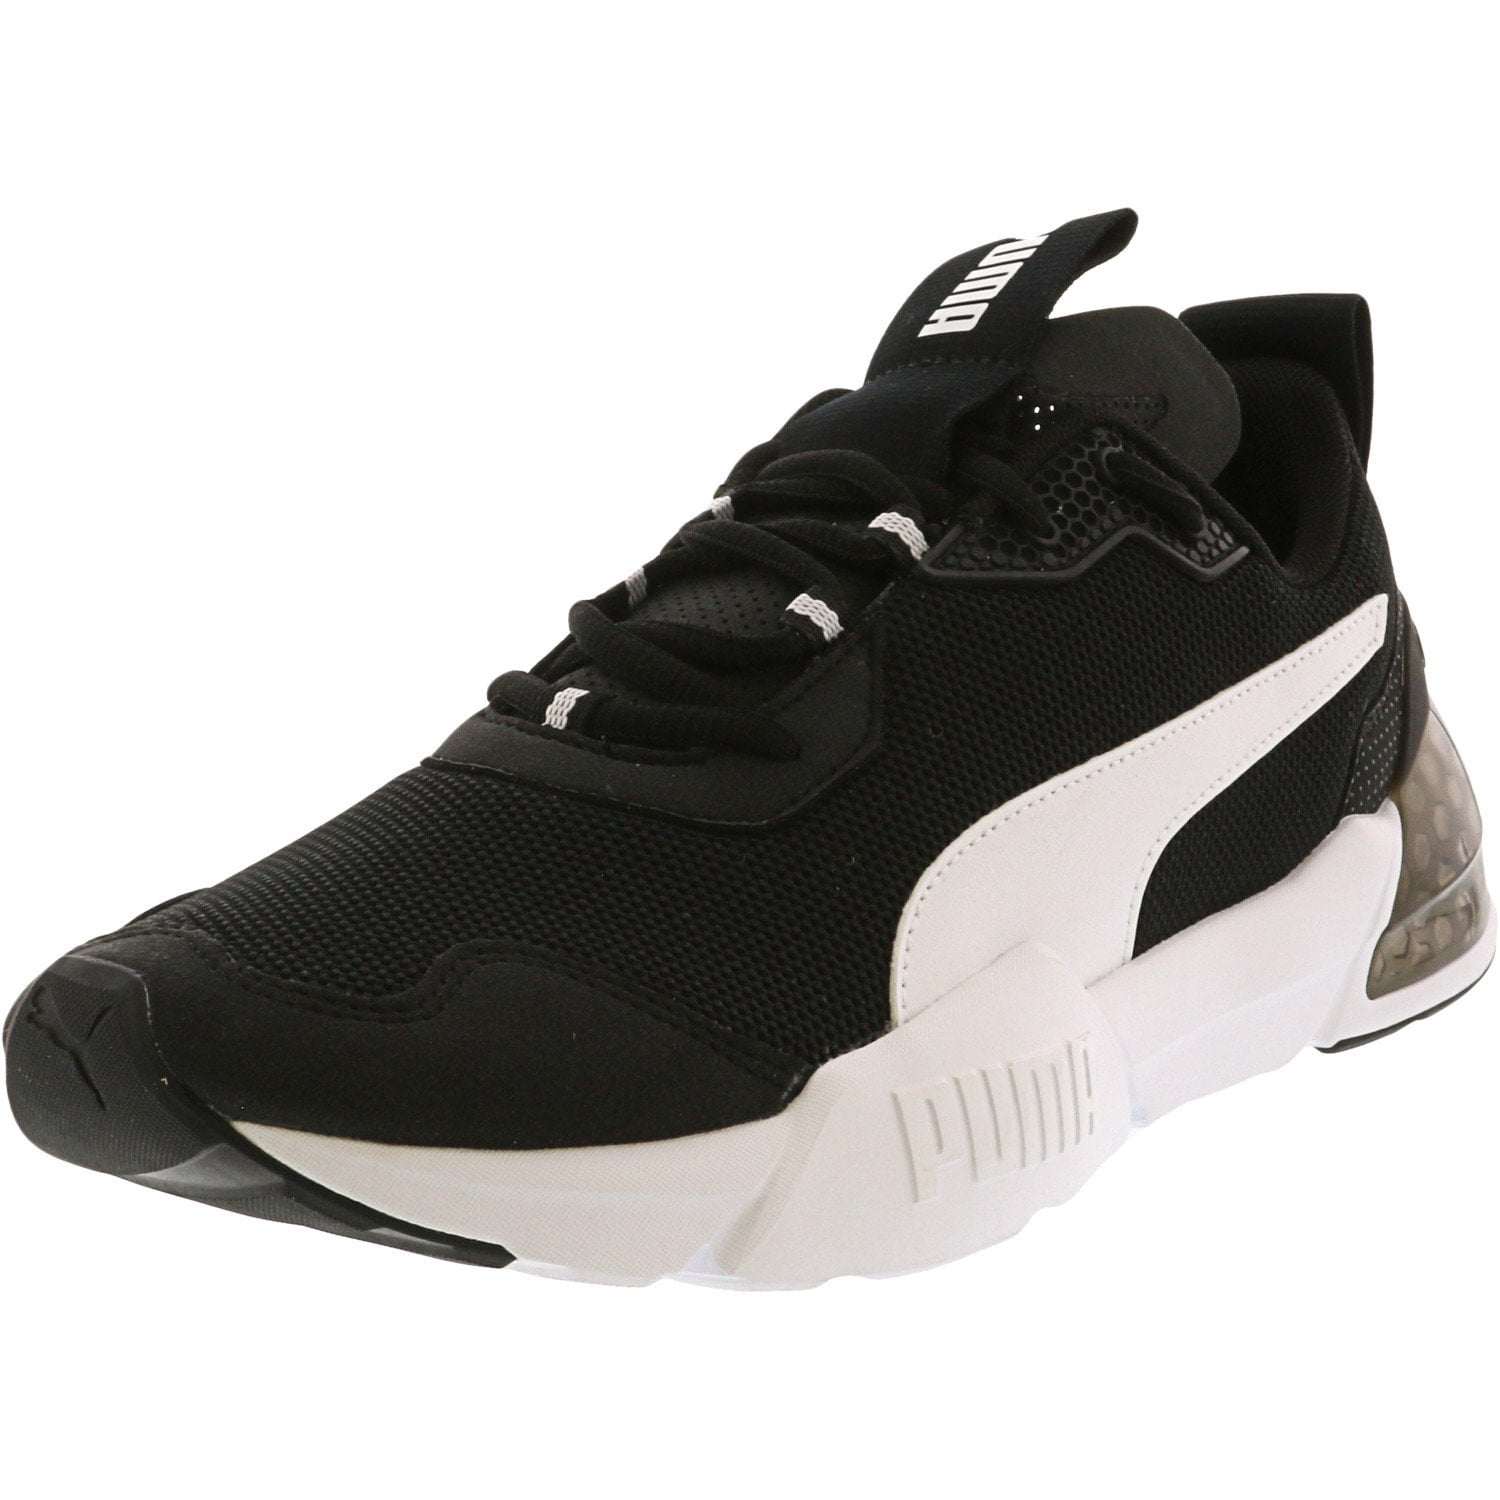 Puma Men's Cell Phantom Black / White Ankle-High Mesh Sneaker - 10M ...